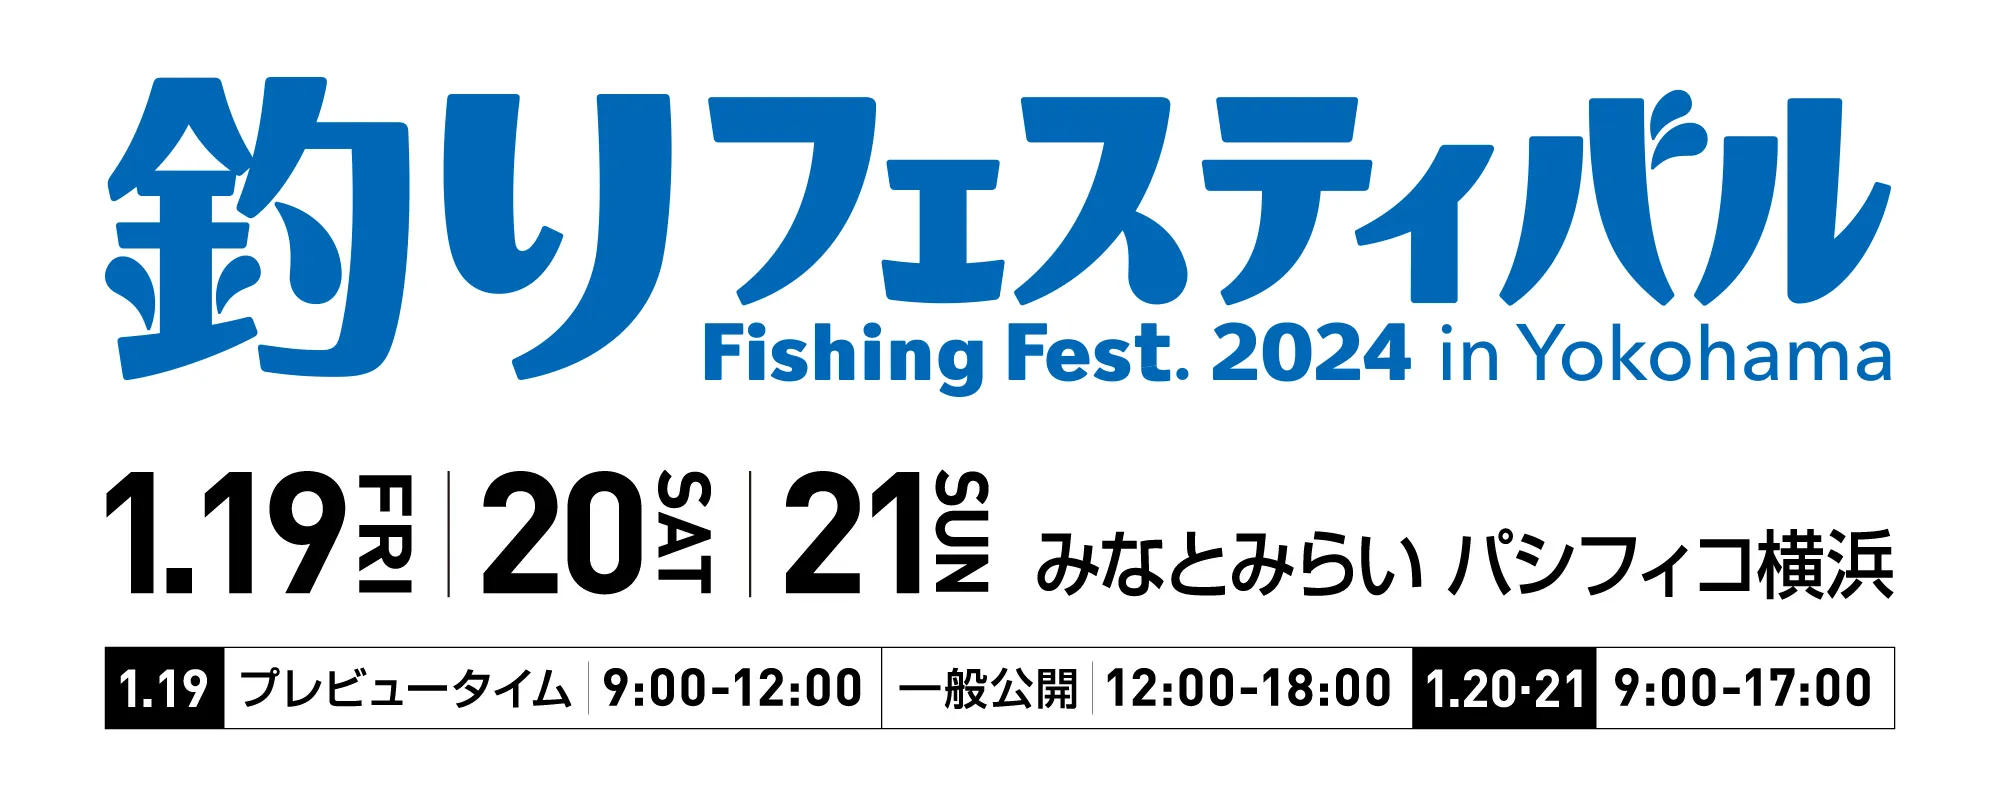 釣りフェスティバル/Fishing Fest. 2024 in Yokohamaに出展いたします ...